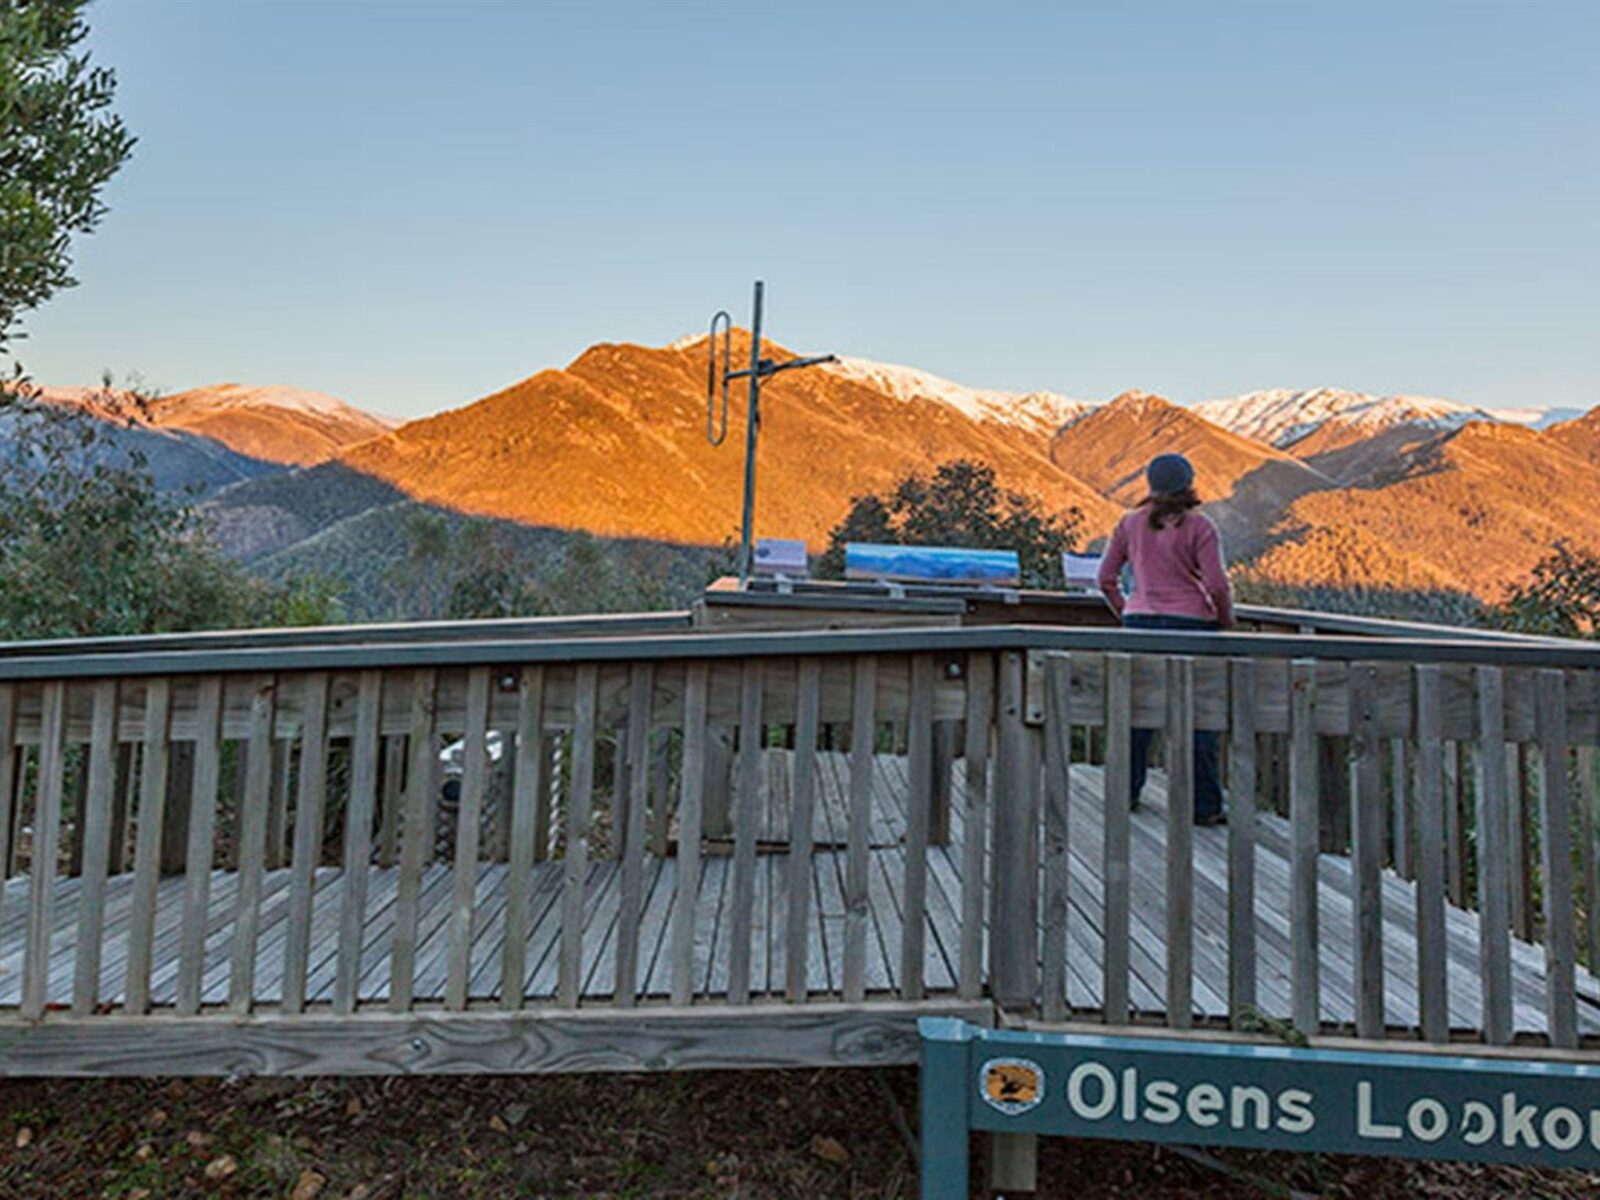 Olsens lookout, Kosciuszko National Park. Photo: Murray Vanderveer © OEH